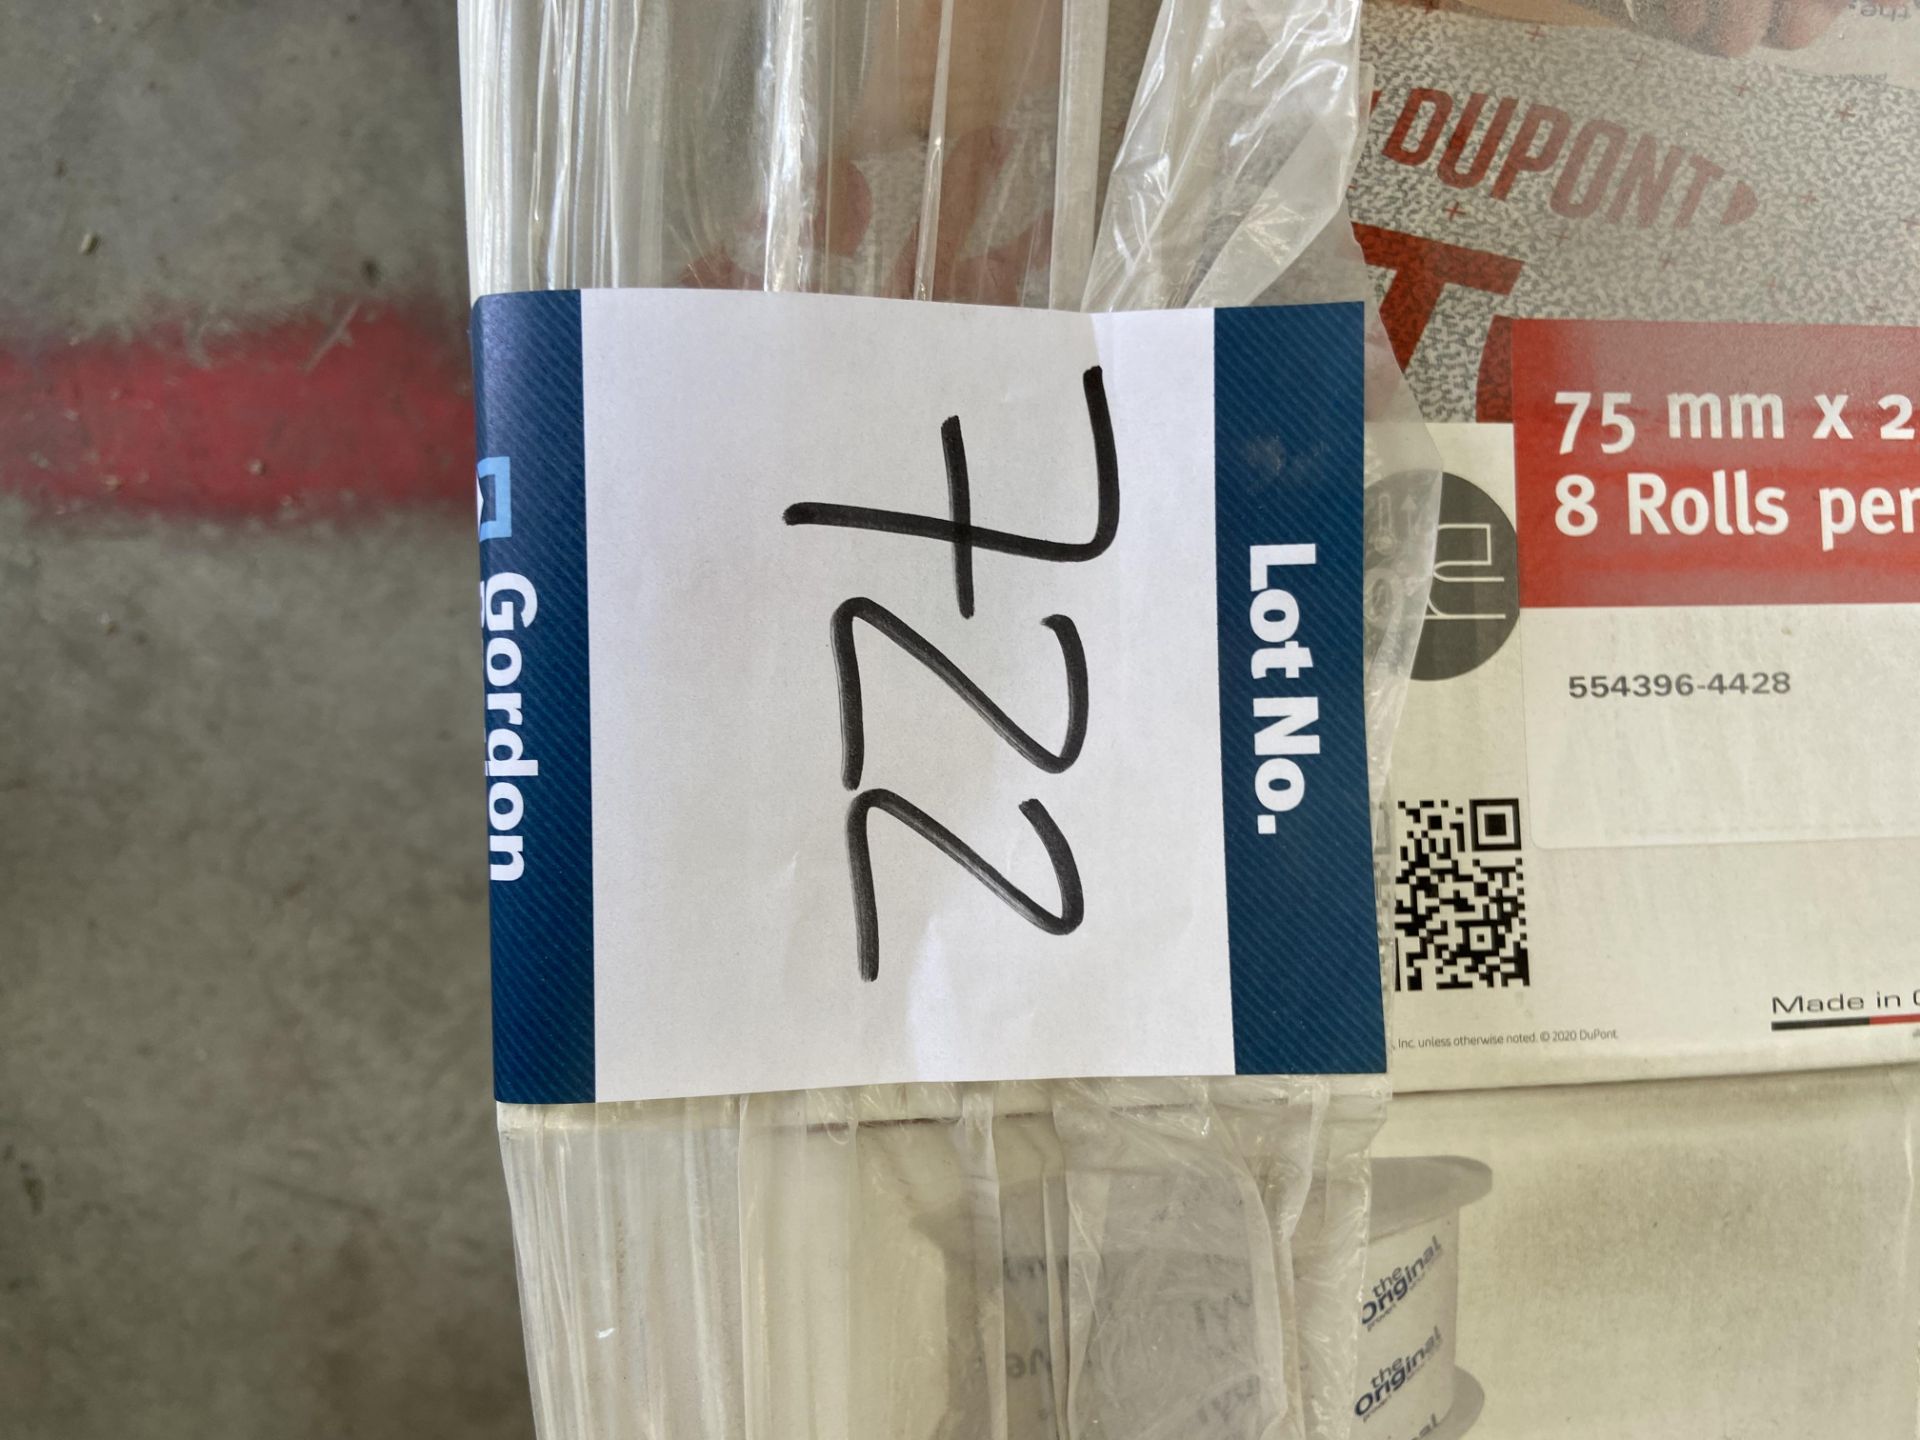 Dupont Tyvek acrylic tape 28 boxes - Image 3 of 3